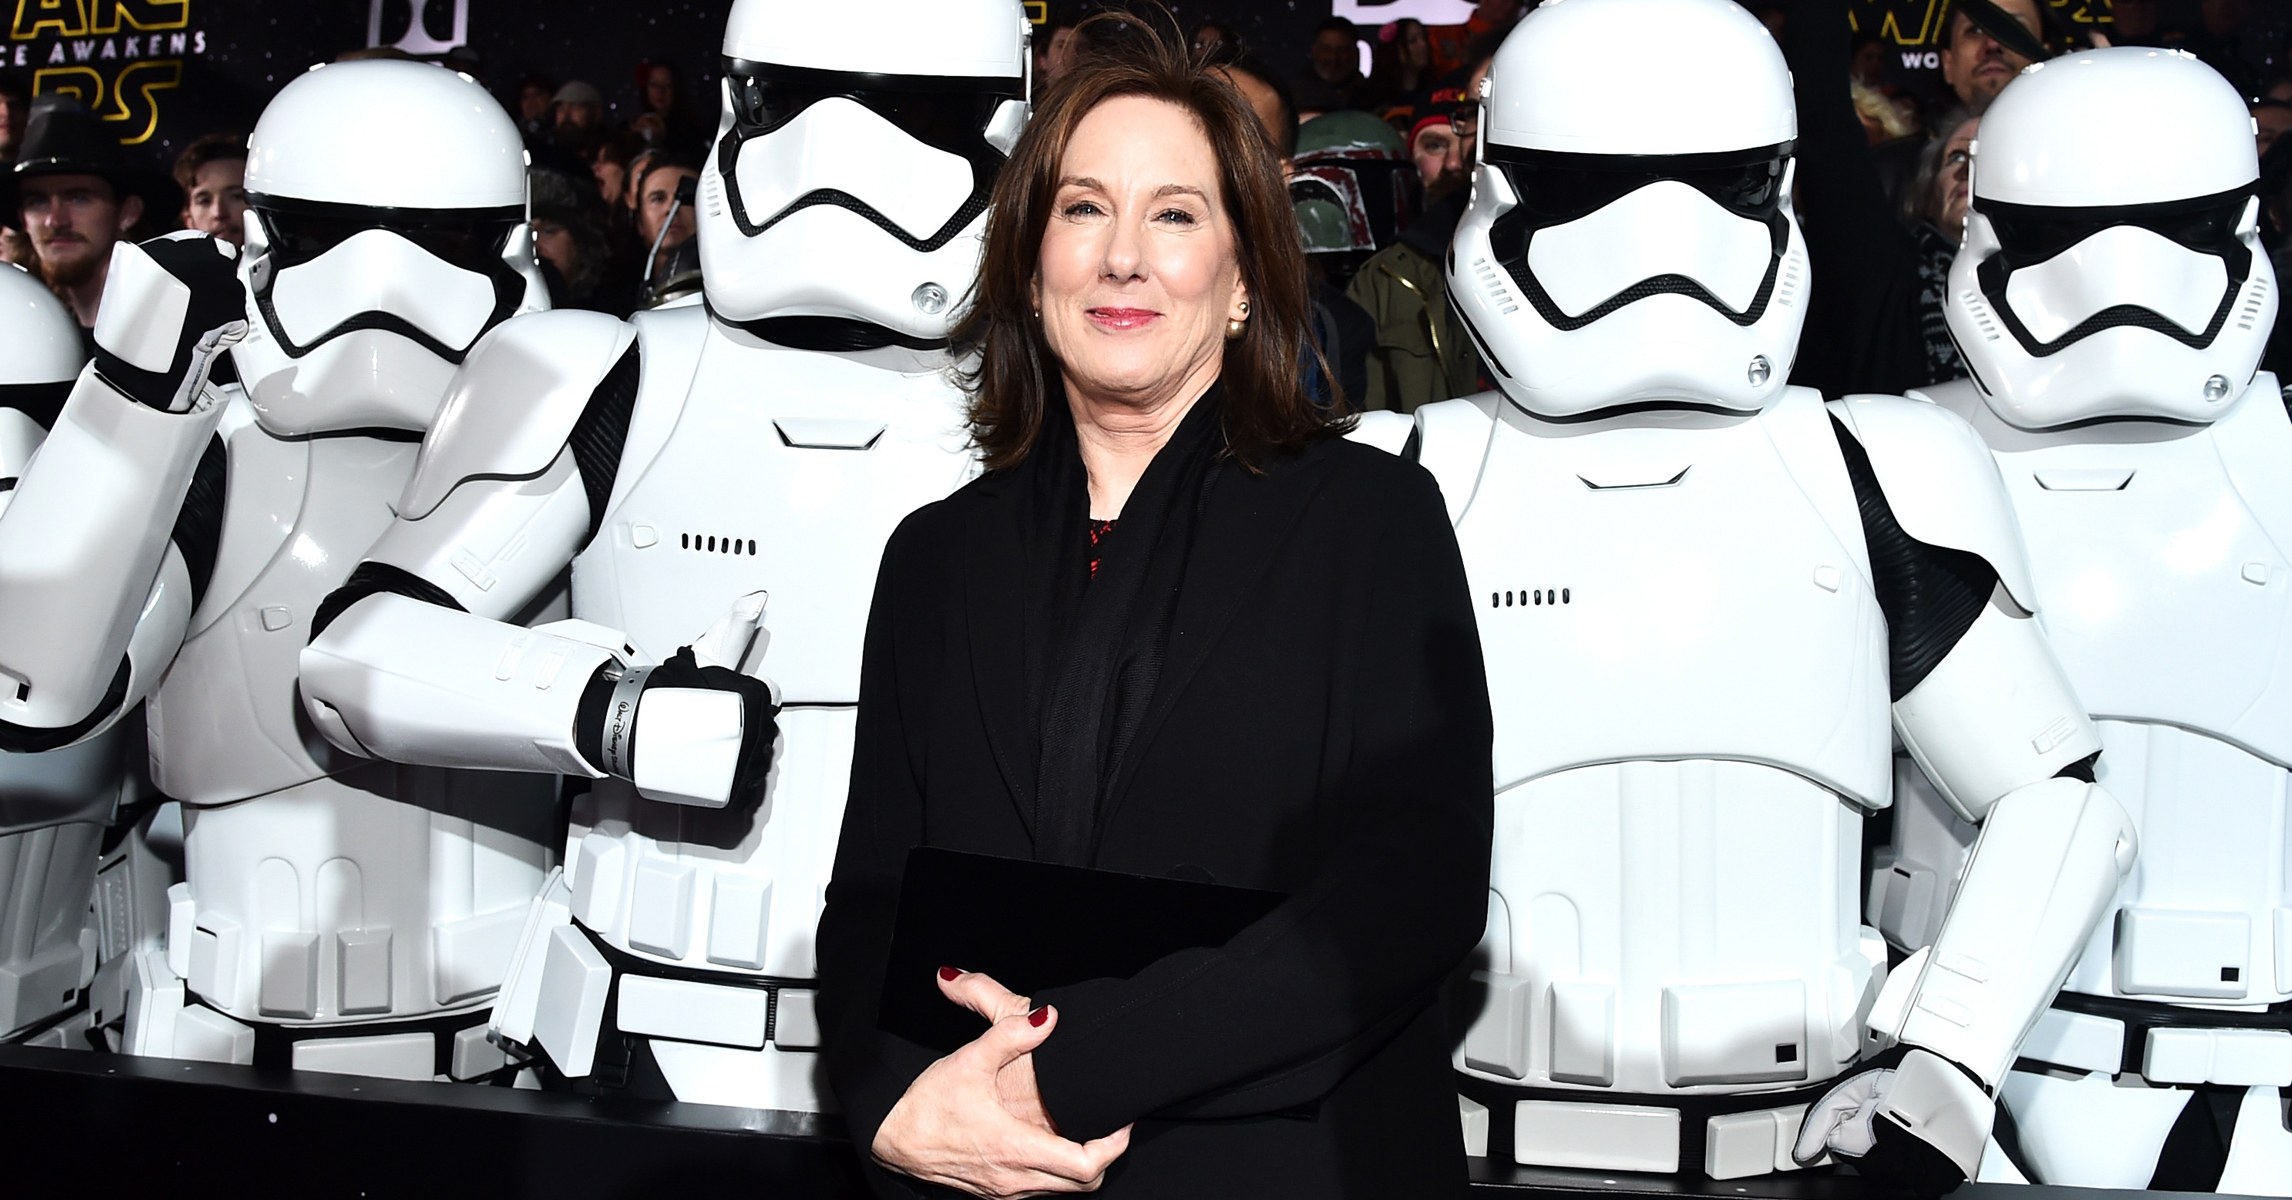 La presidenta de 'Star Wars' Kathleen Kennedy recibirá el Oscar por toda su carrera